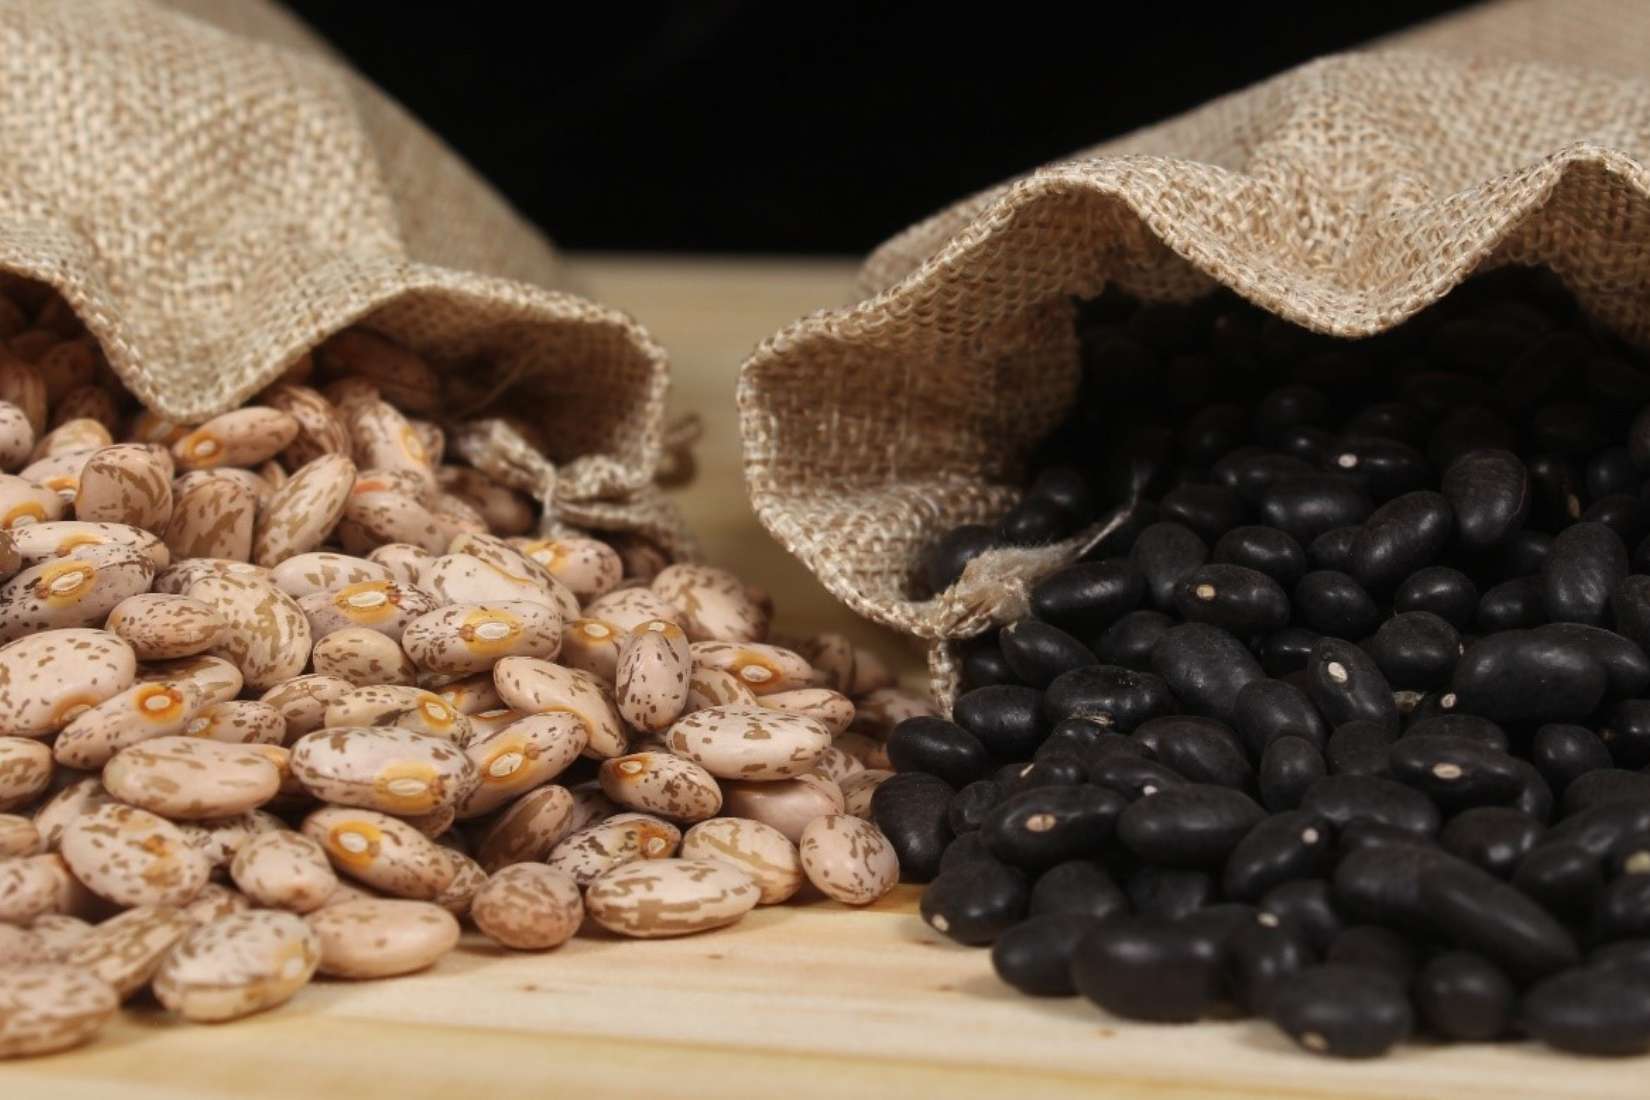 Contigo® Prewashed Pinto Beans, Triple Cleaned Pinto Beans, and Triple Cleaned Black Beans.